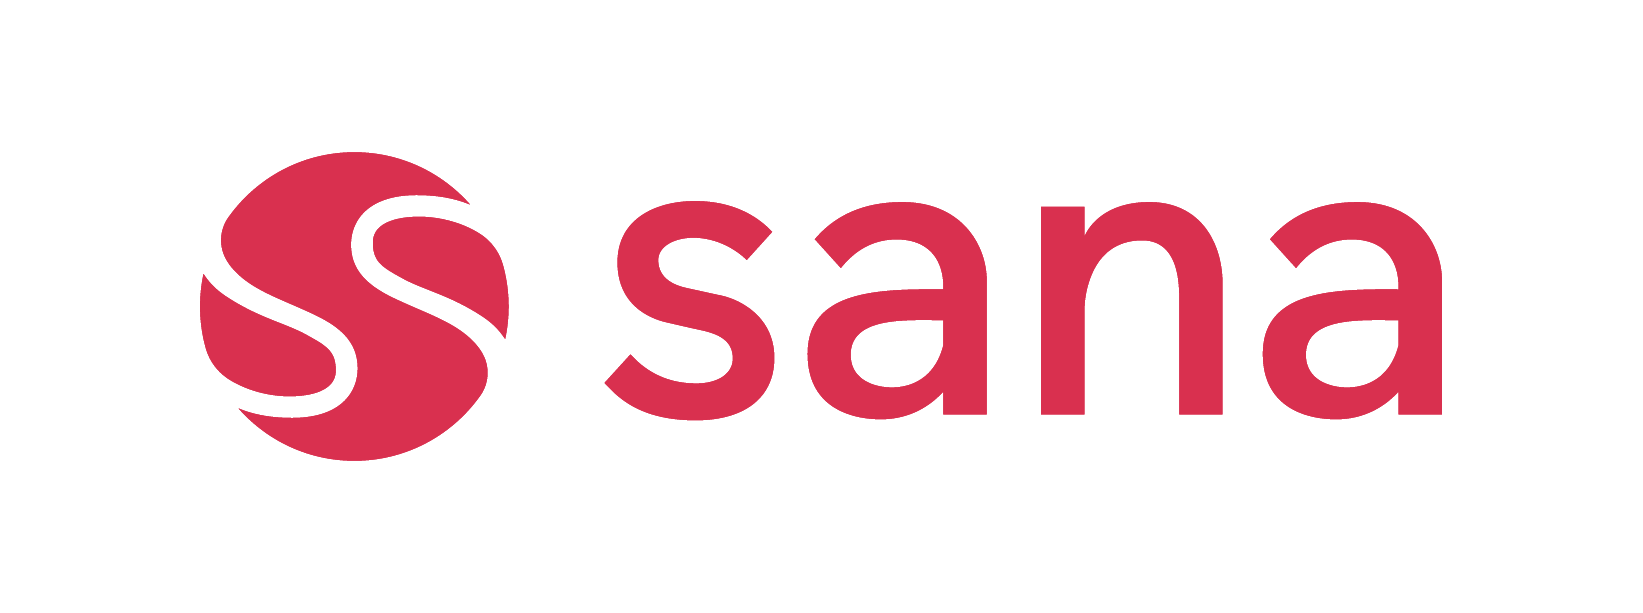 Sana Commerce logo - New branded logo of Sana Commerce